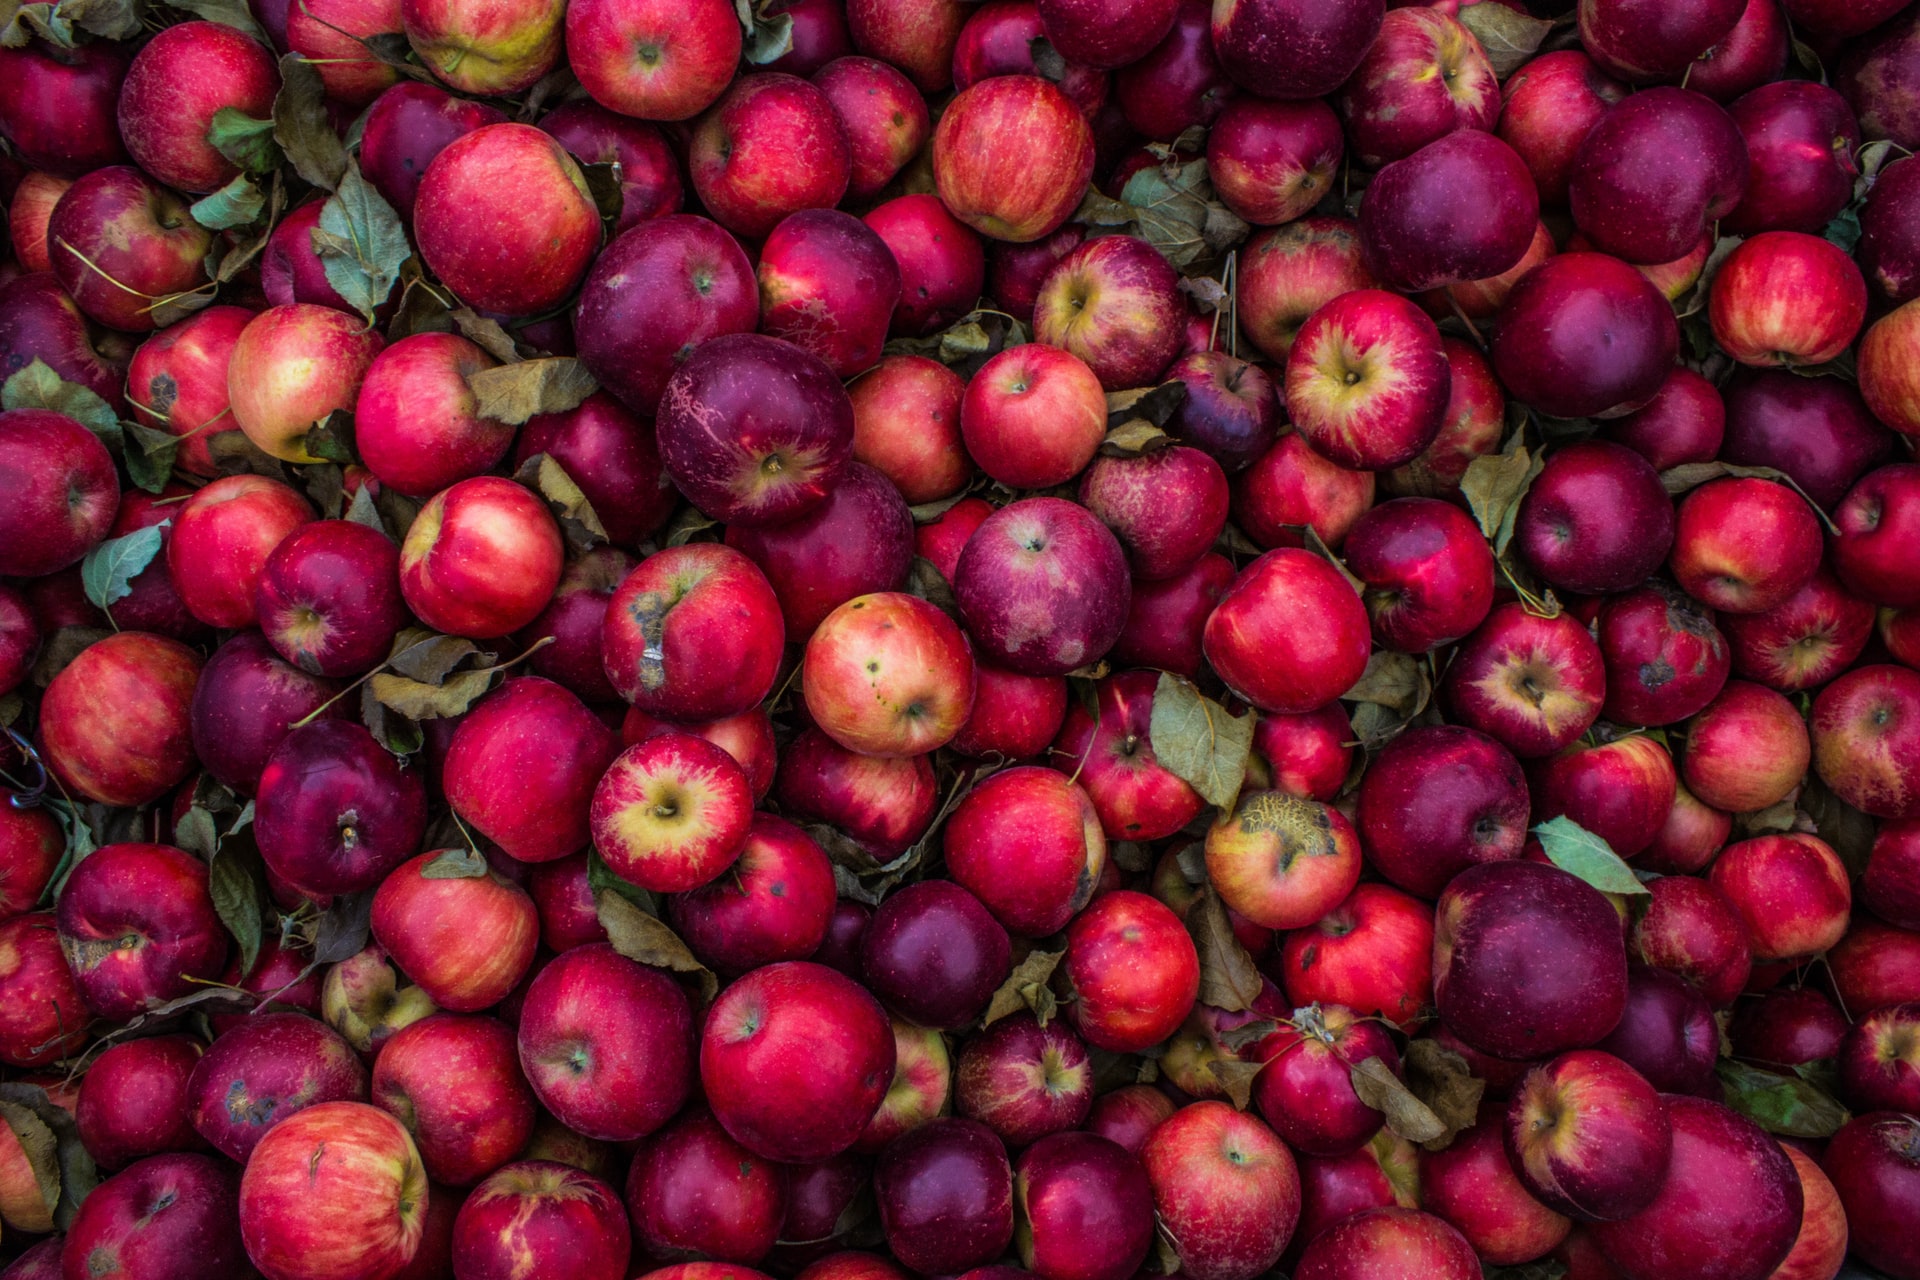 Hundreds of red apples freshly picked